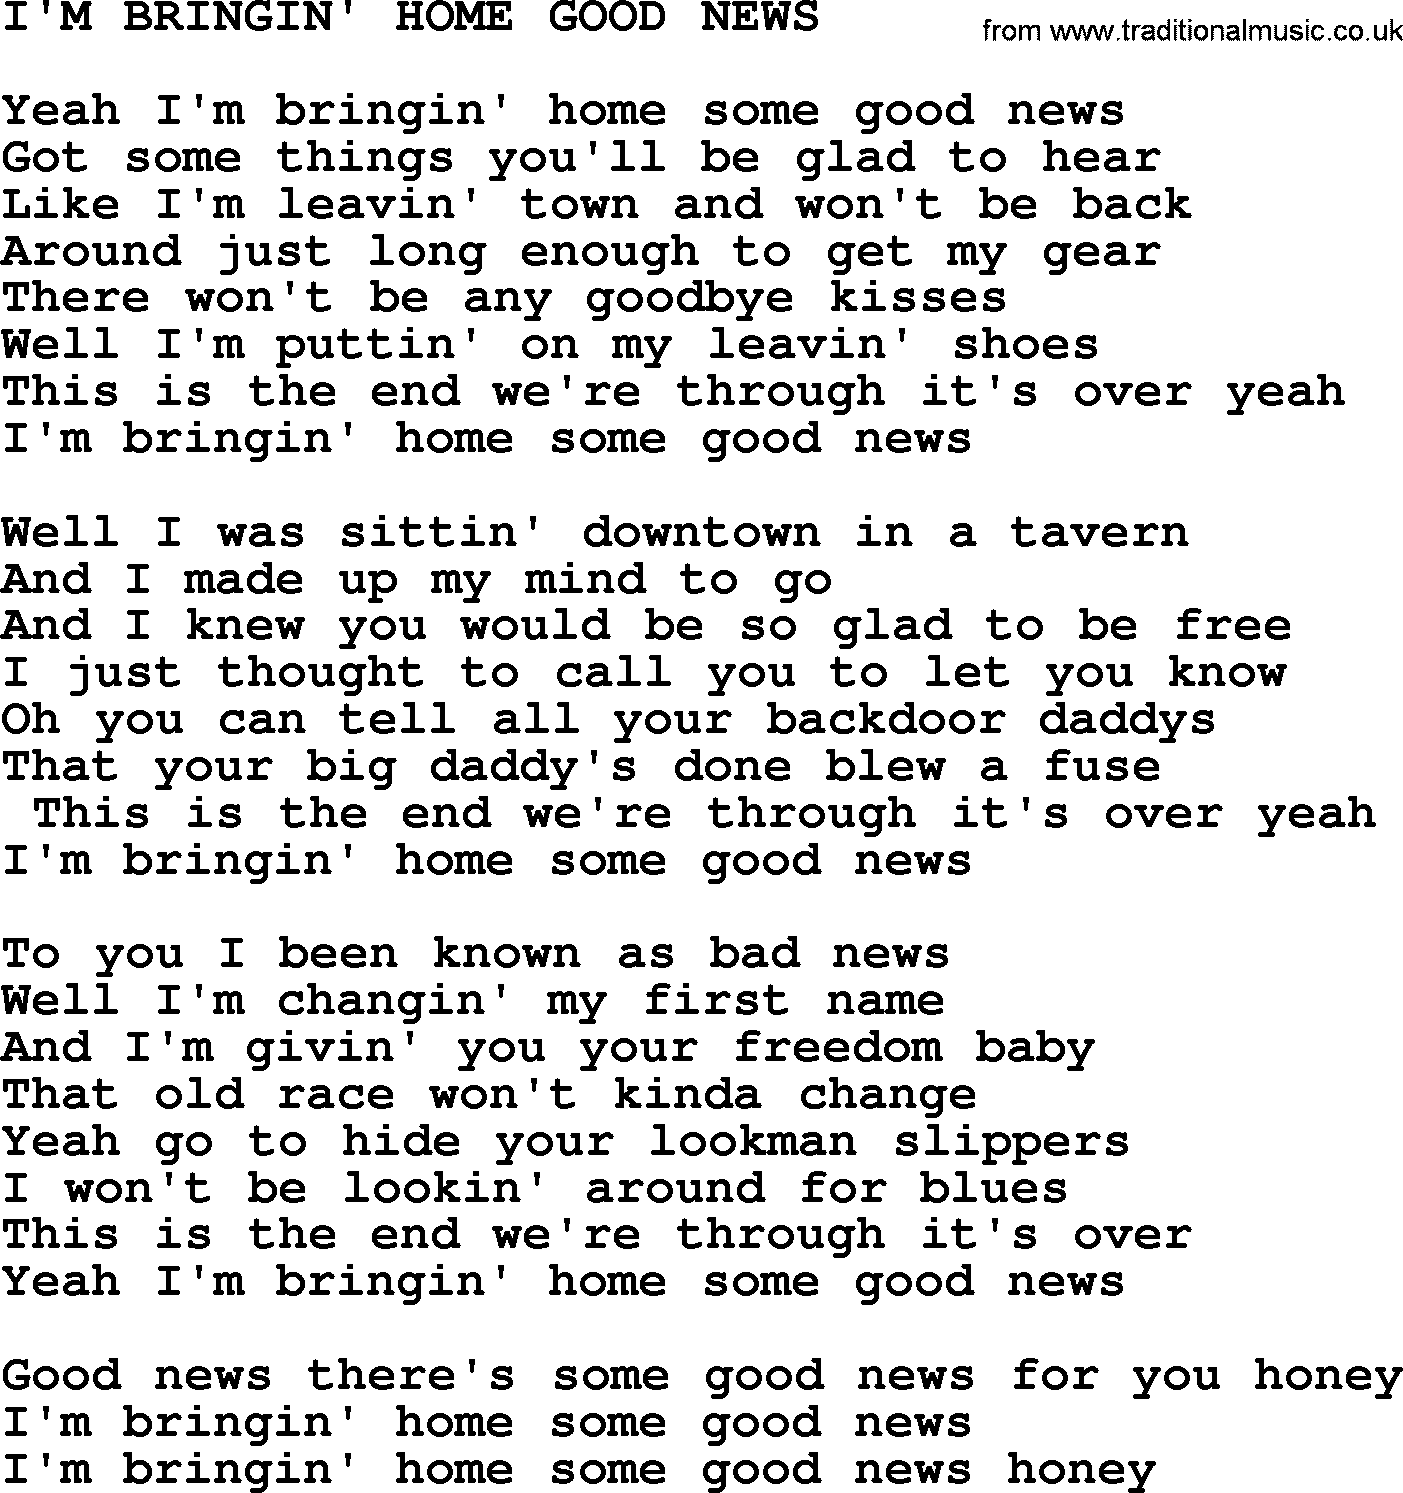 Merle Haggard song: I'm Bringin' Home Good News, lyrics.